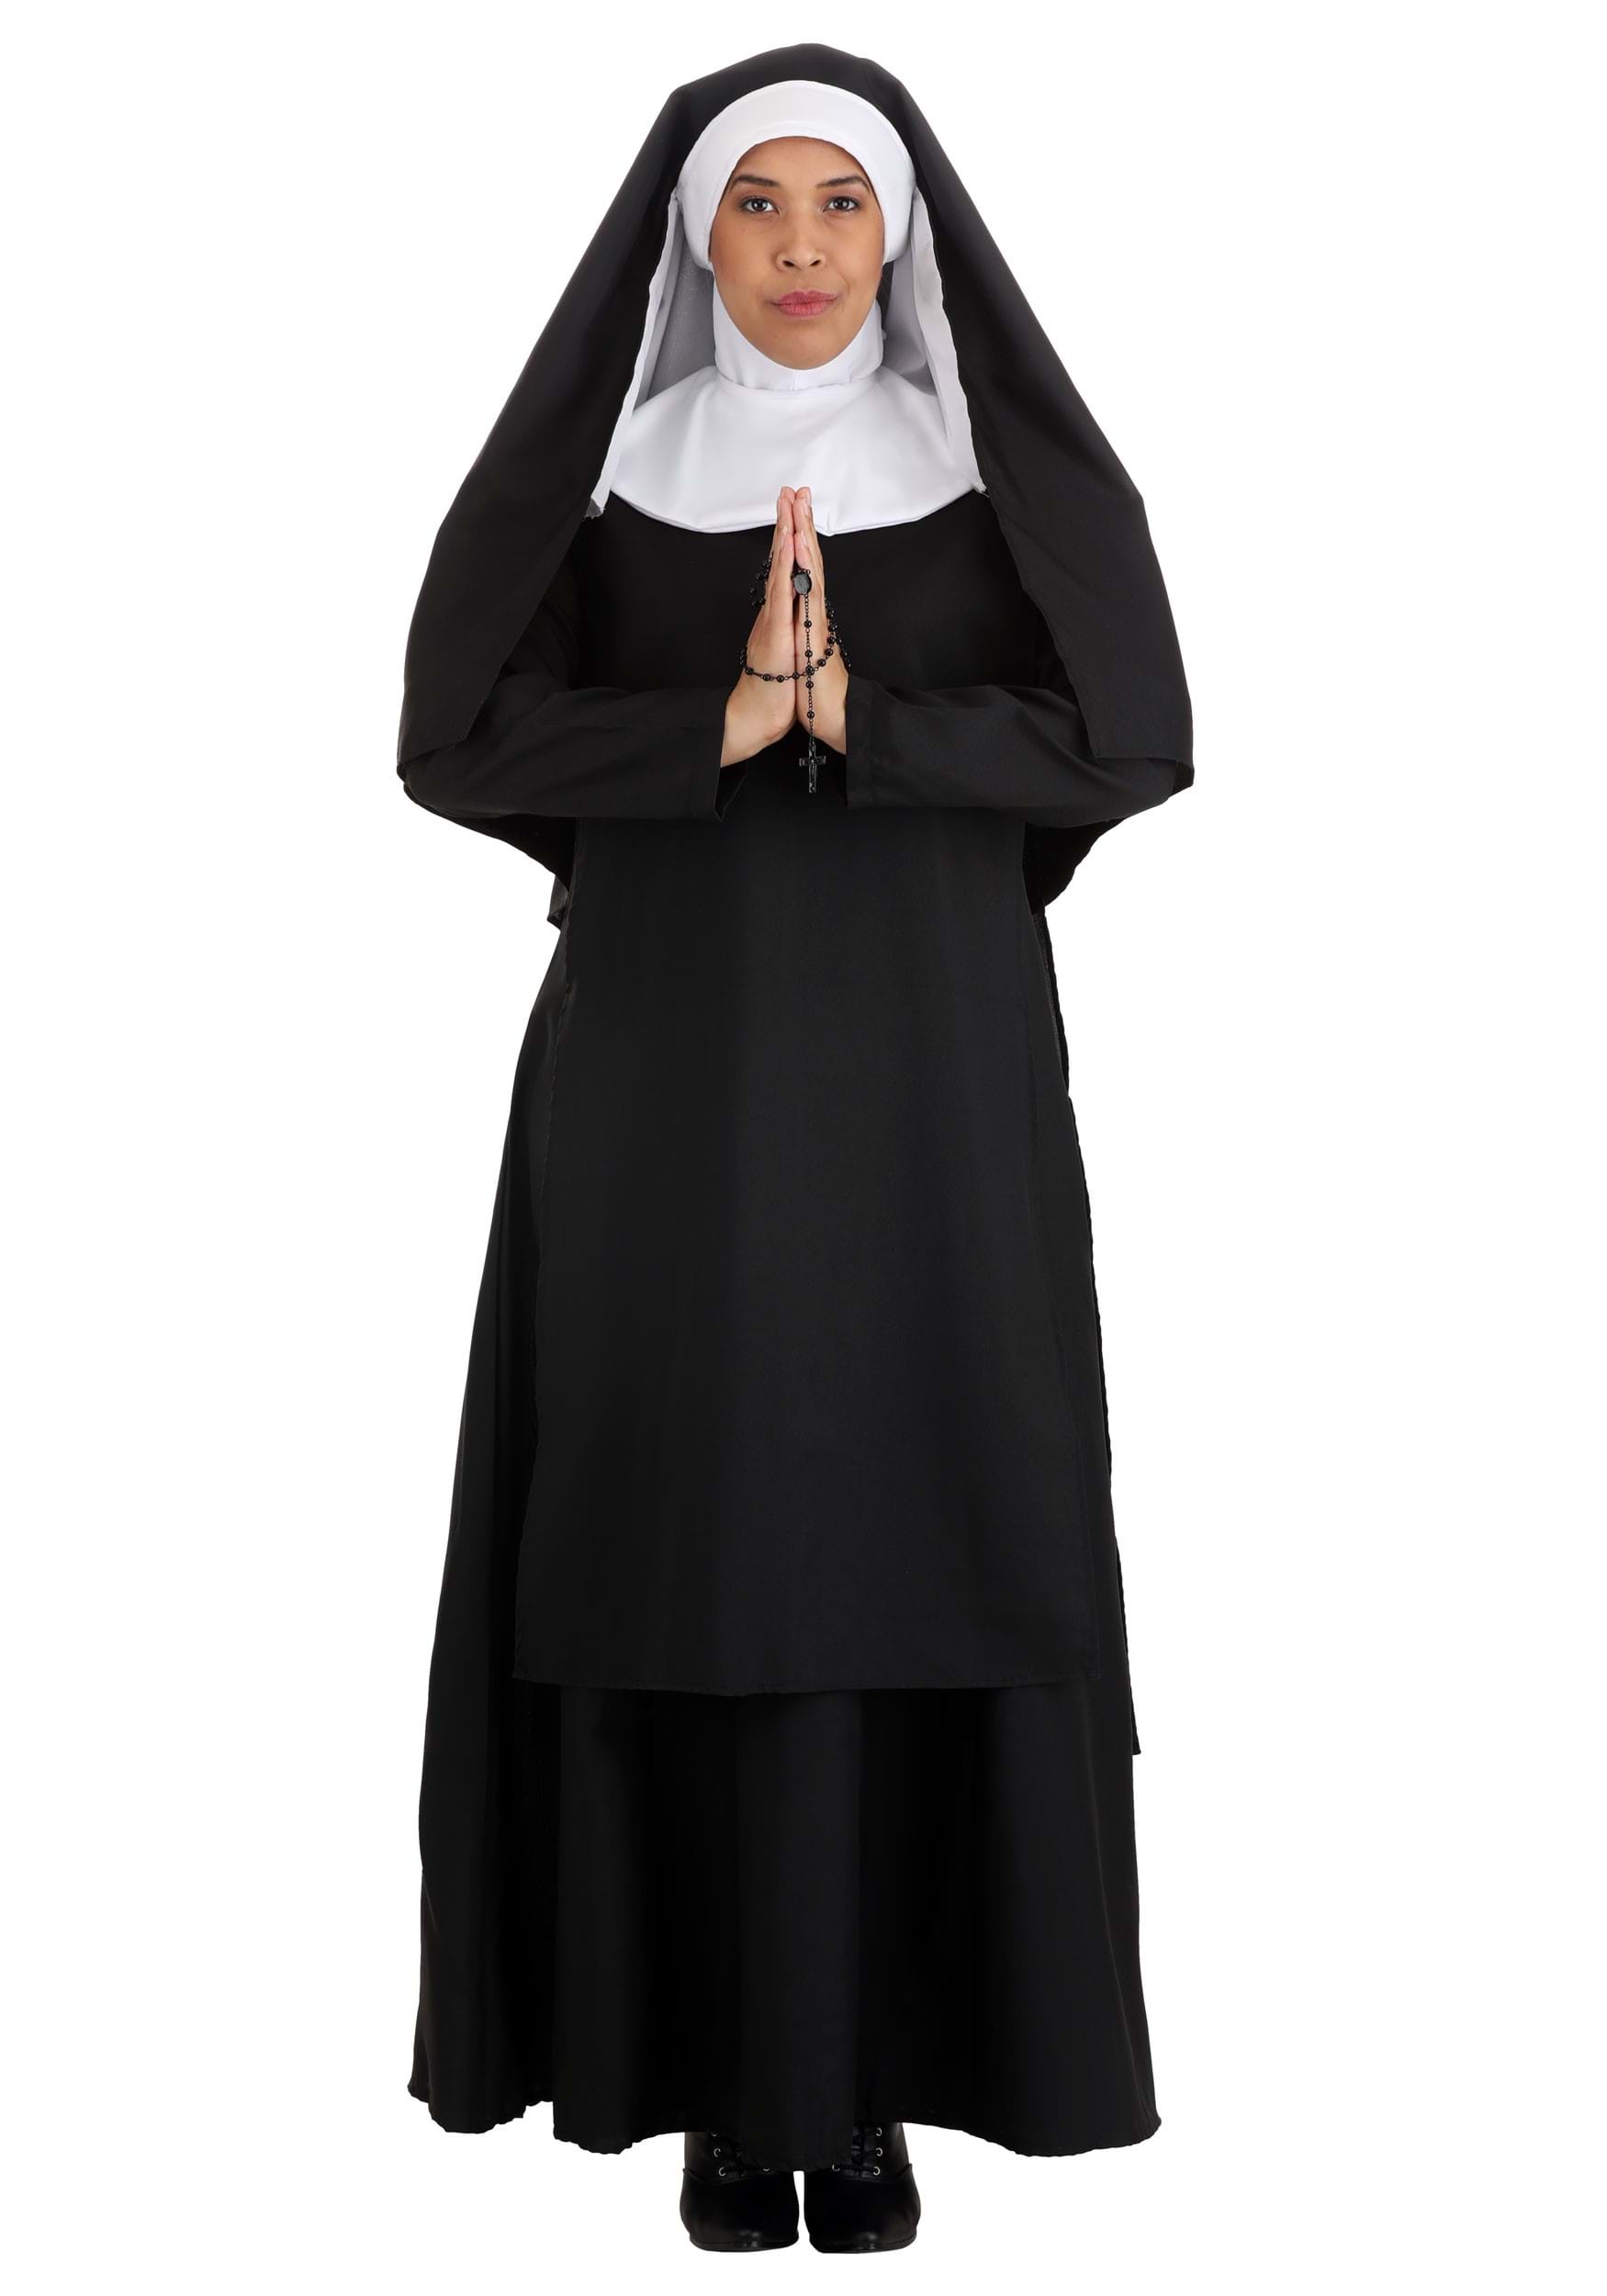 Deluxe Nun Costume For Women